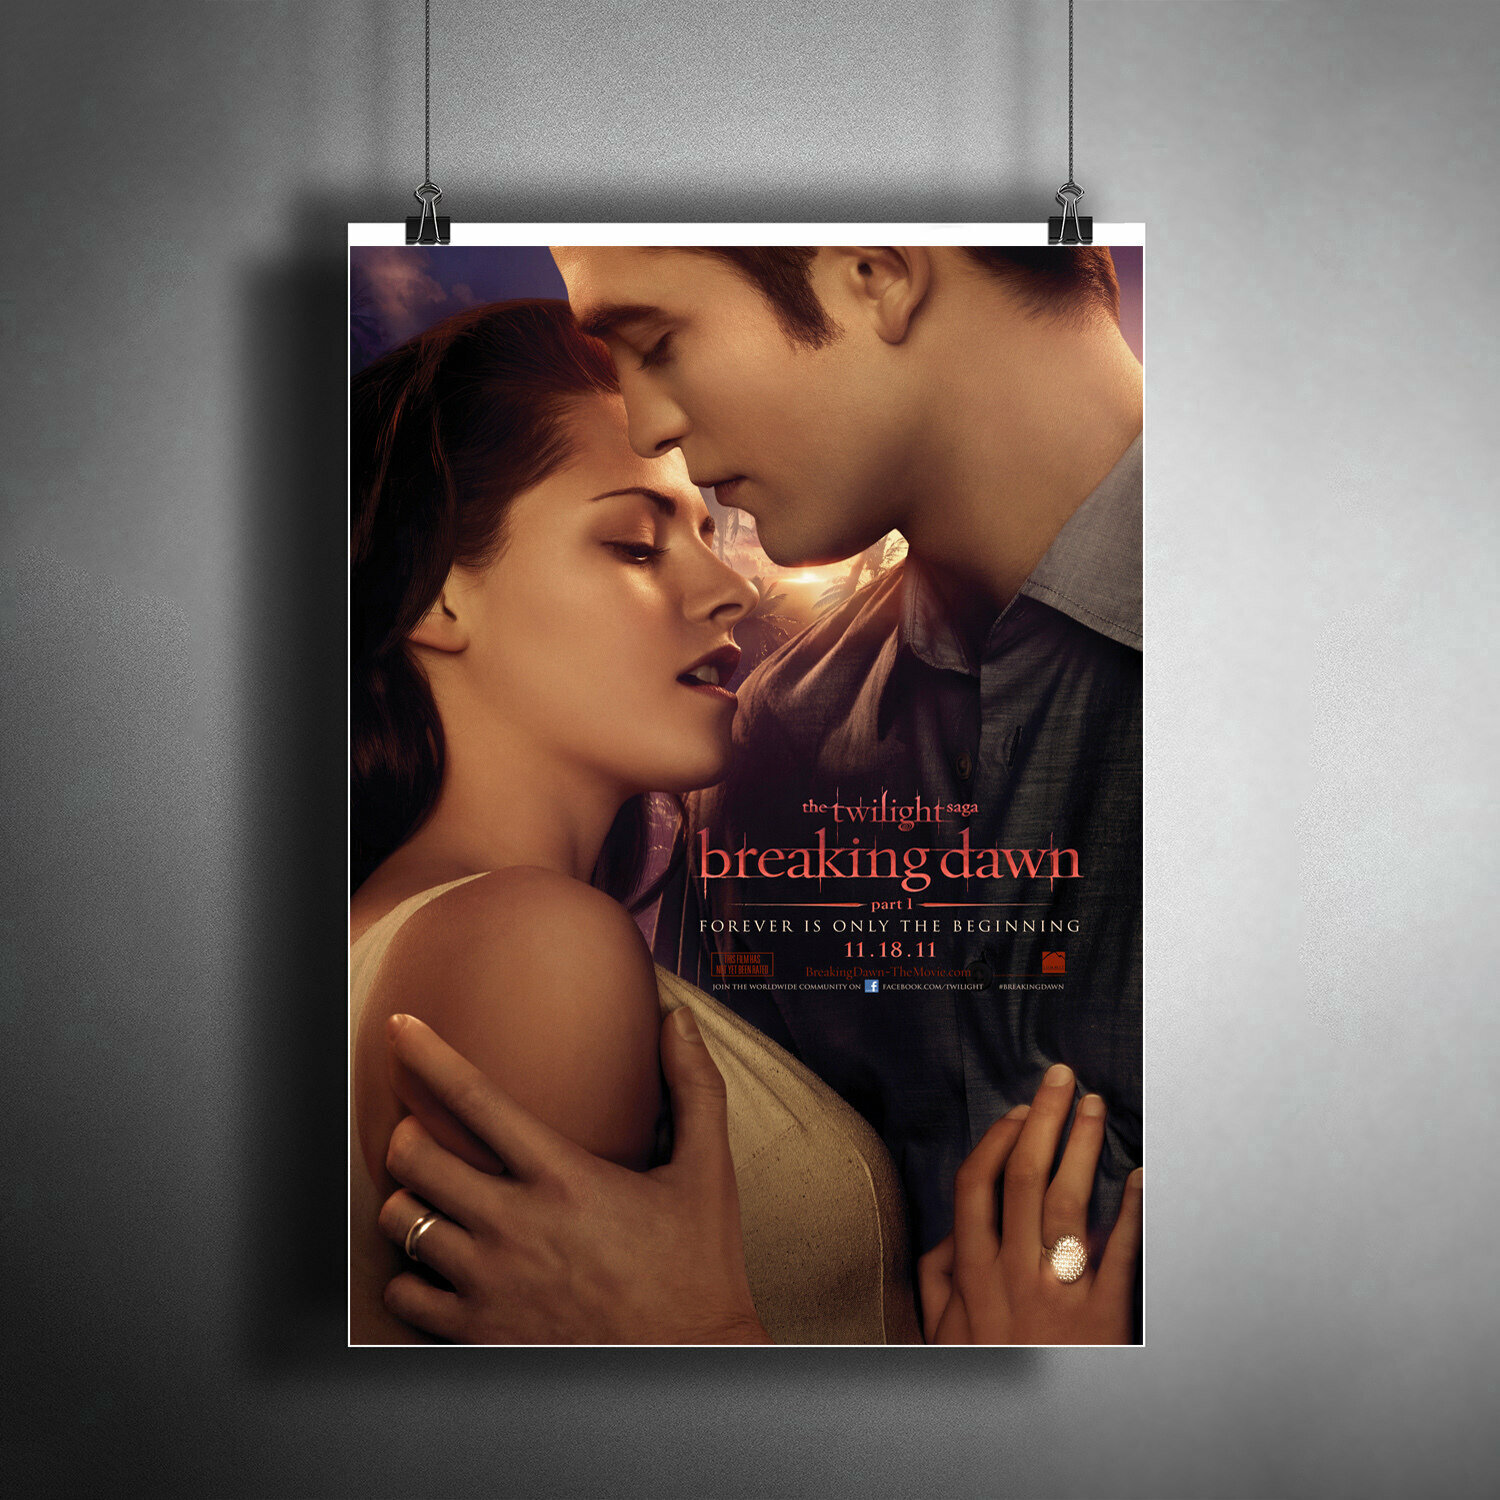 Постер плакат для интерьера "Фильм: Сумерки. Сага. Рассвет: Часть 1. (The Twilight). Вампиры Бэлла и Эдвард" / A3 (297 x 420 мм)